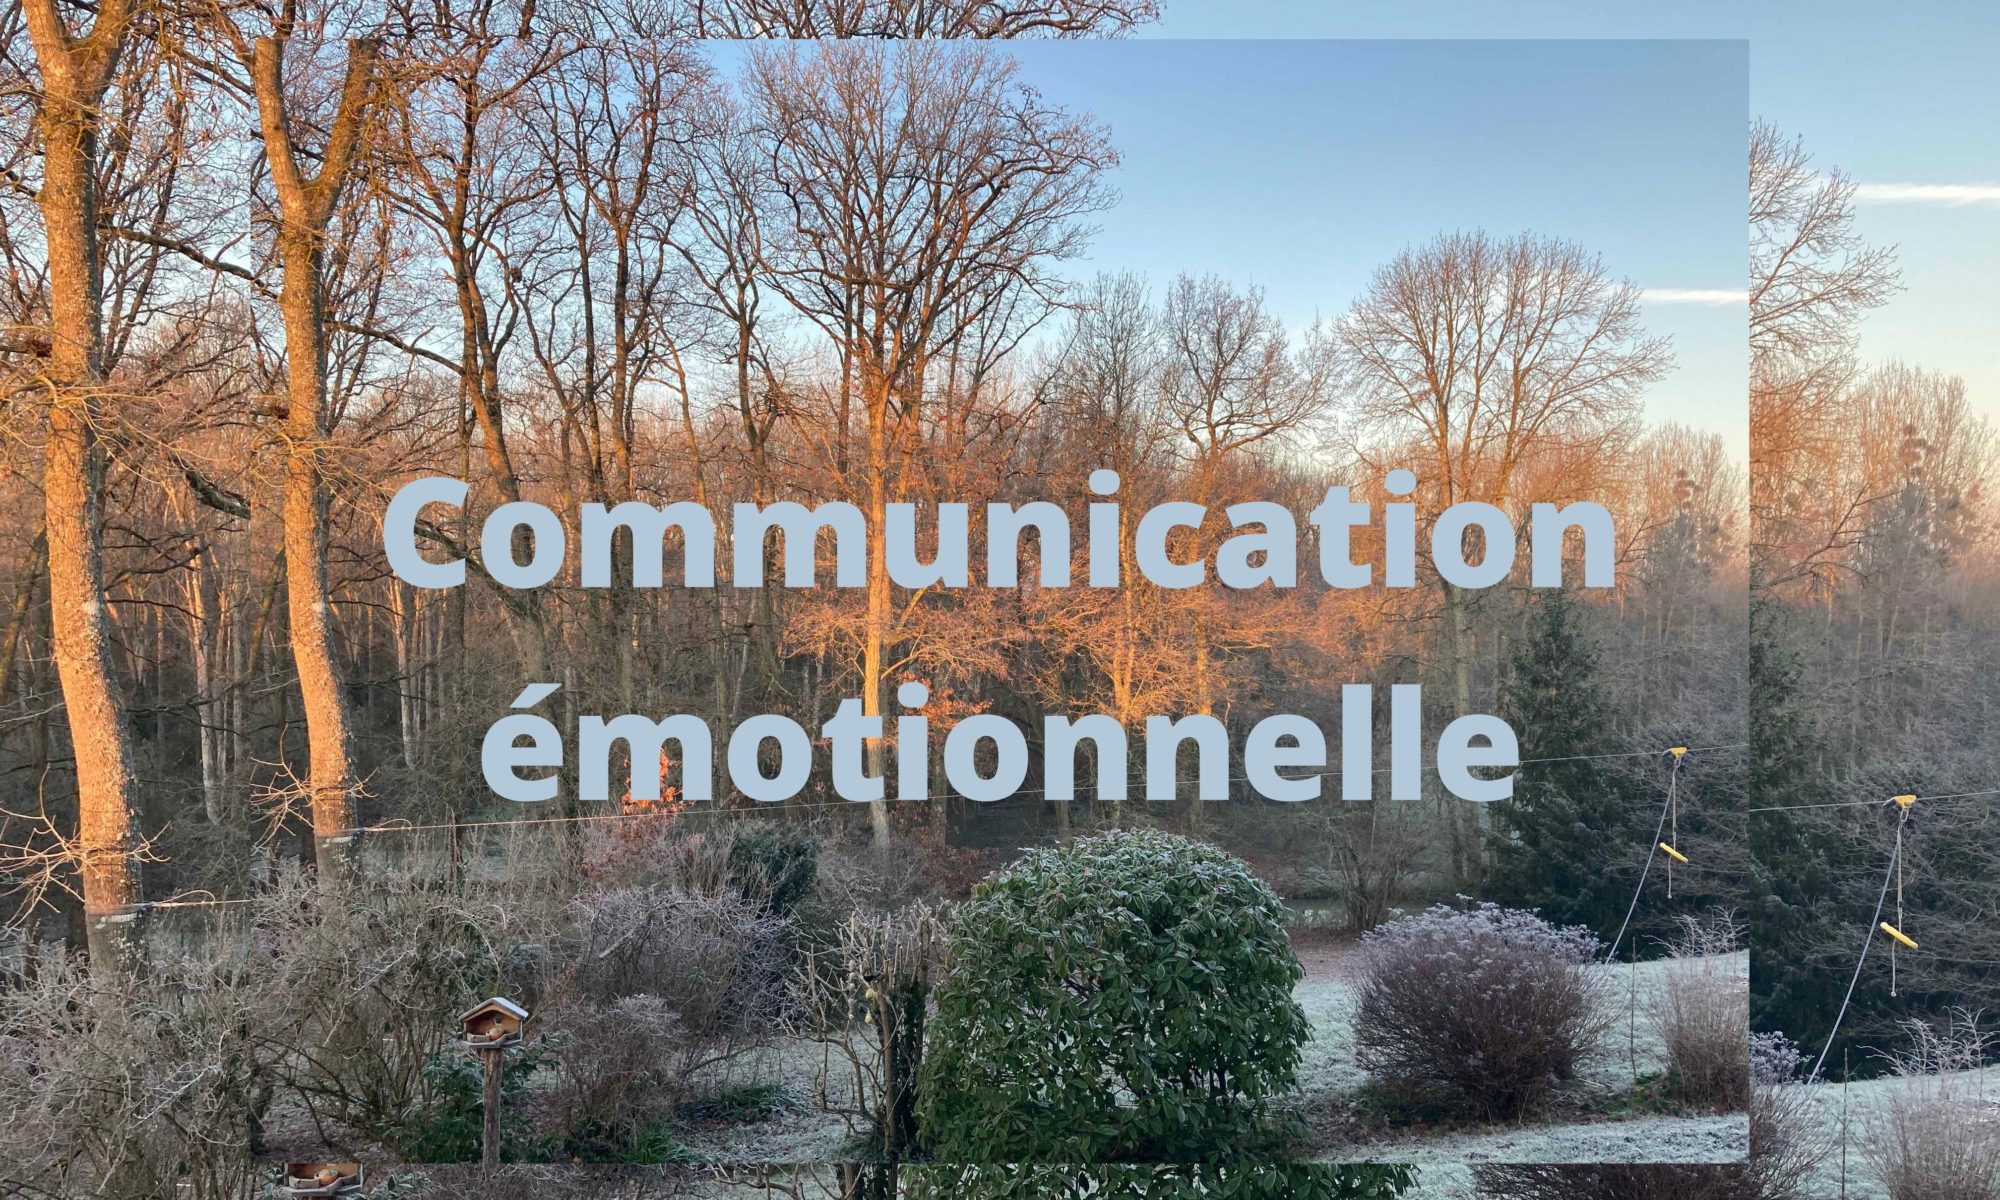 Communication émotionnelle, management stratégique, accompagner, transformer, emotionnal management, emotionnal communication